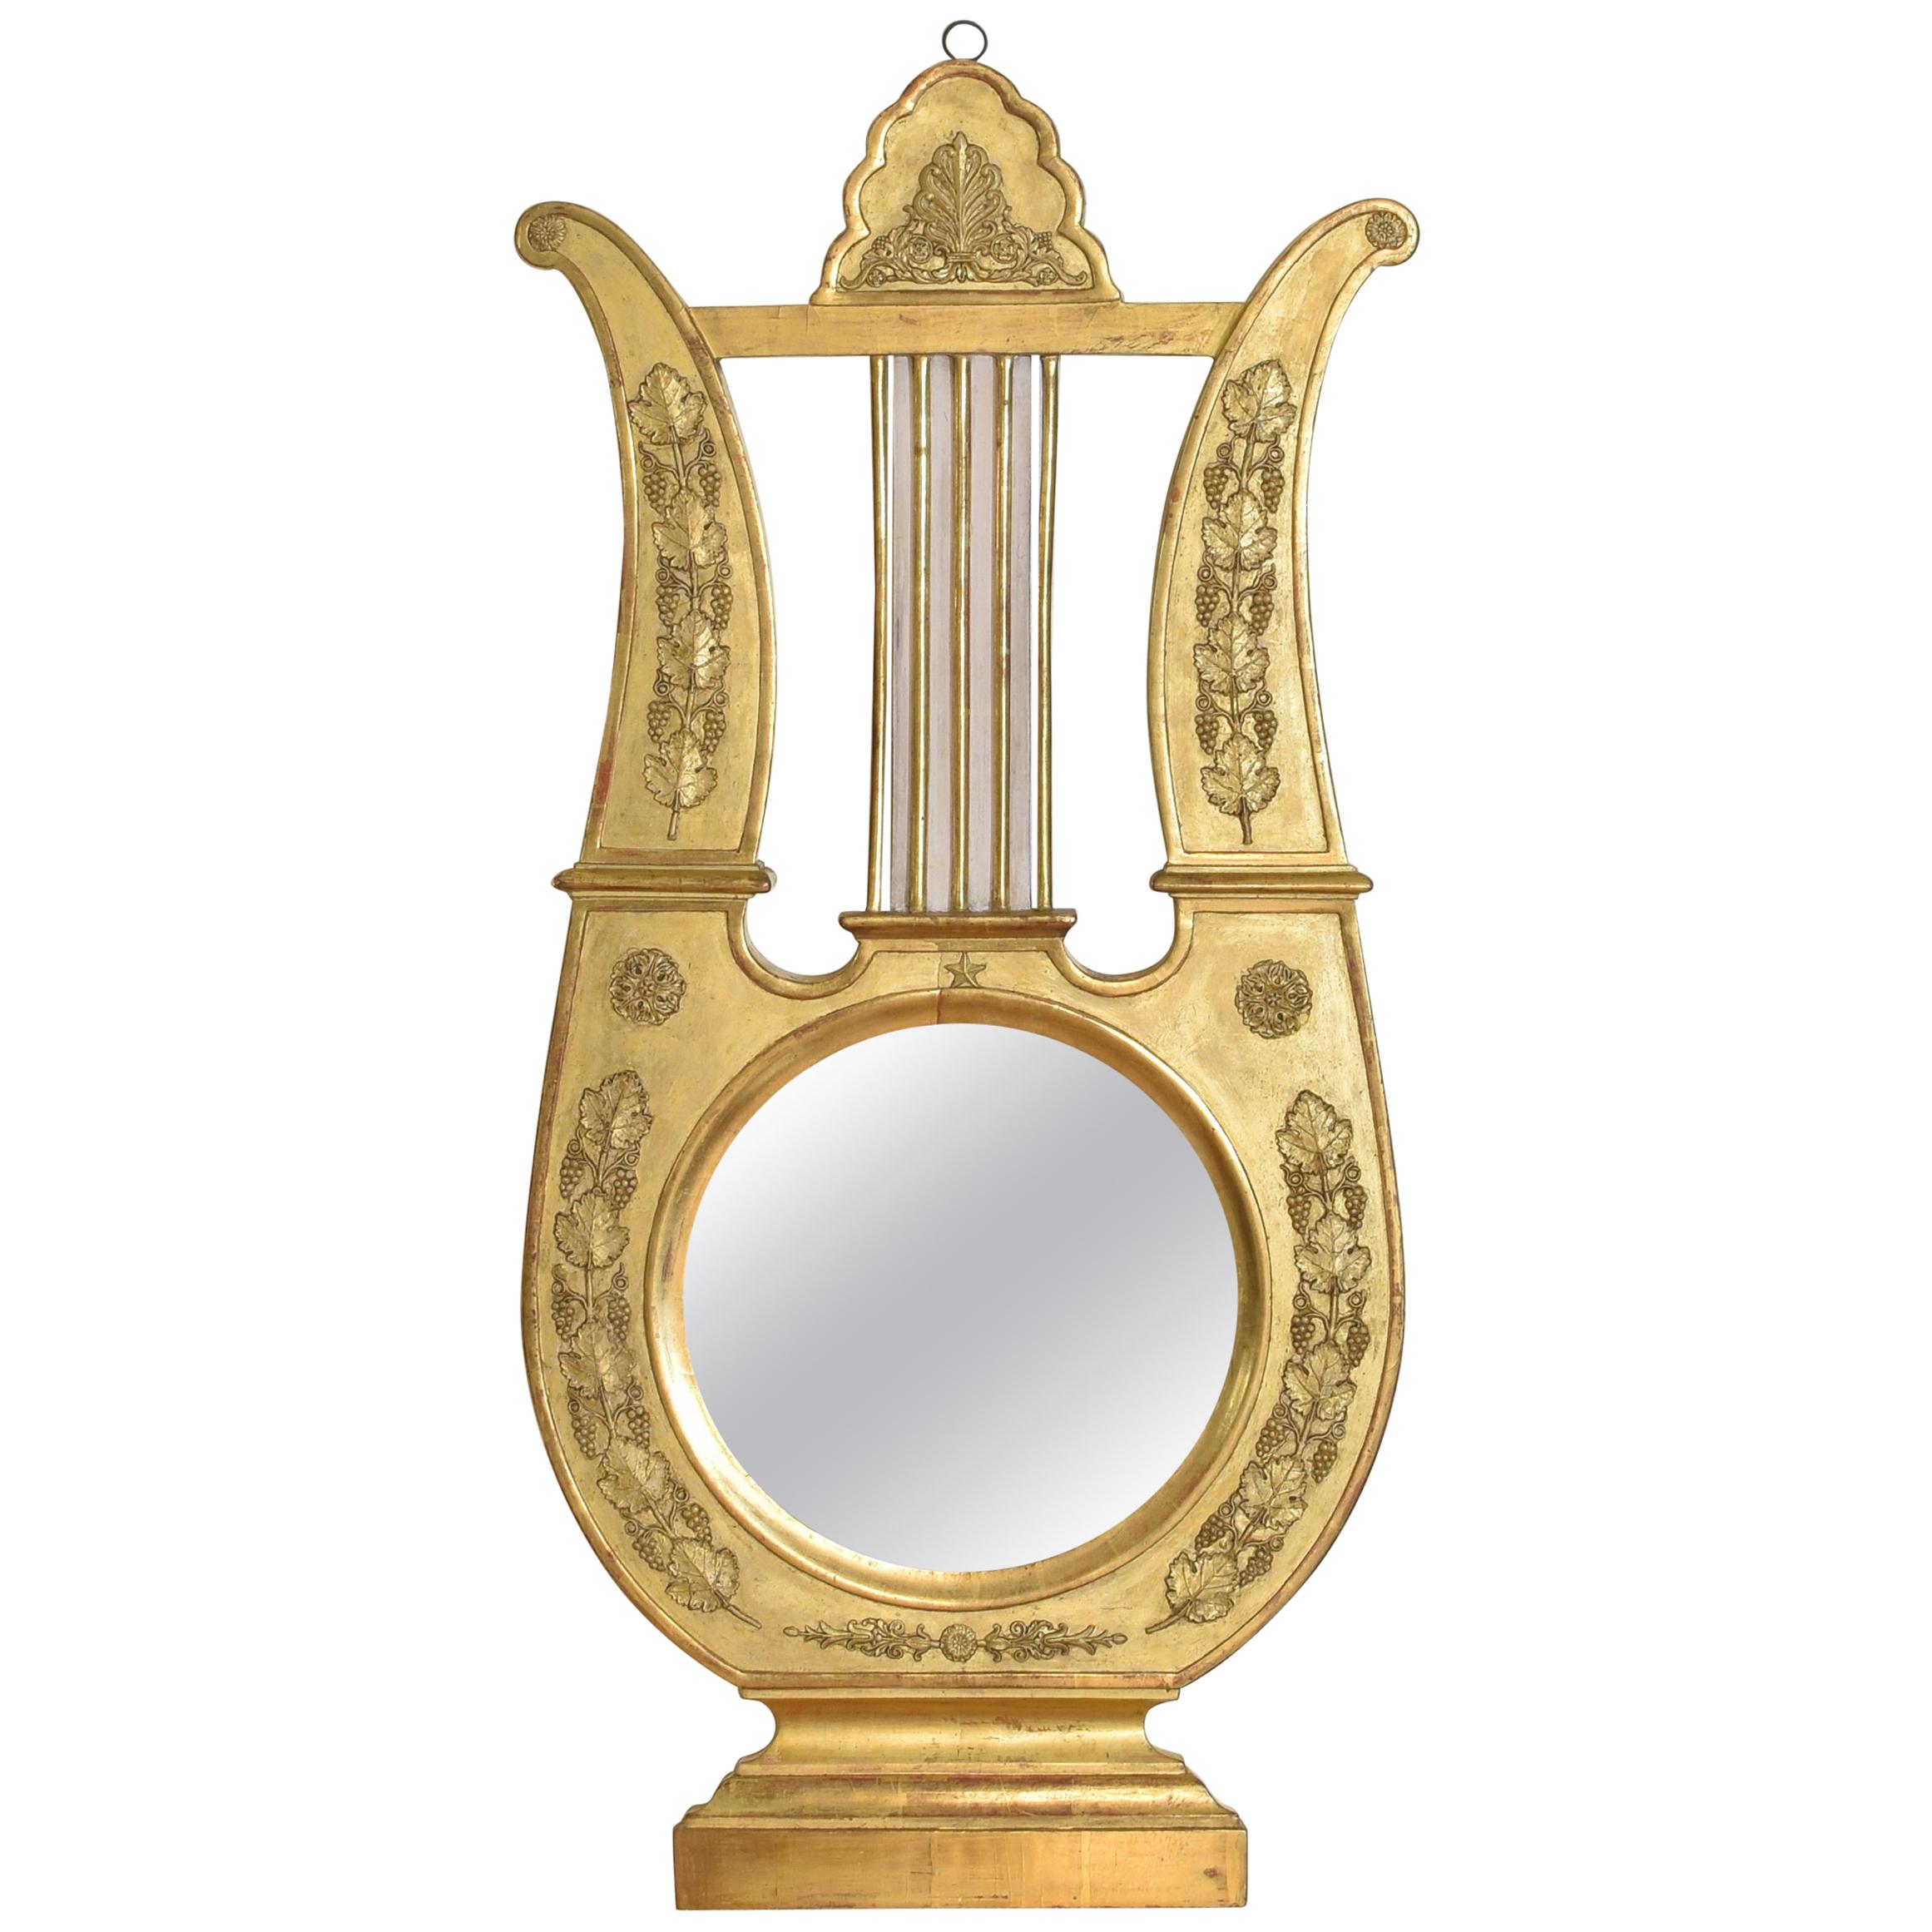 Miroir en bois doré sculpté de la période de l'Empire français, autrefois baromètre, 19ème siècle